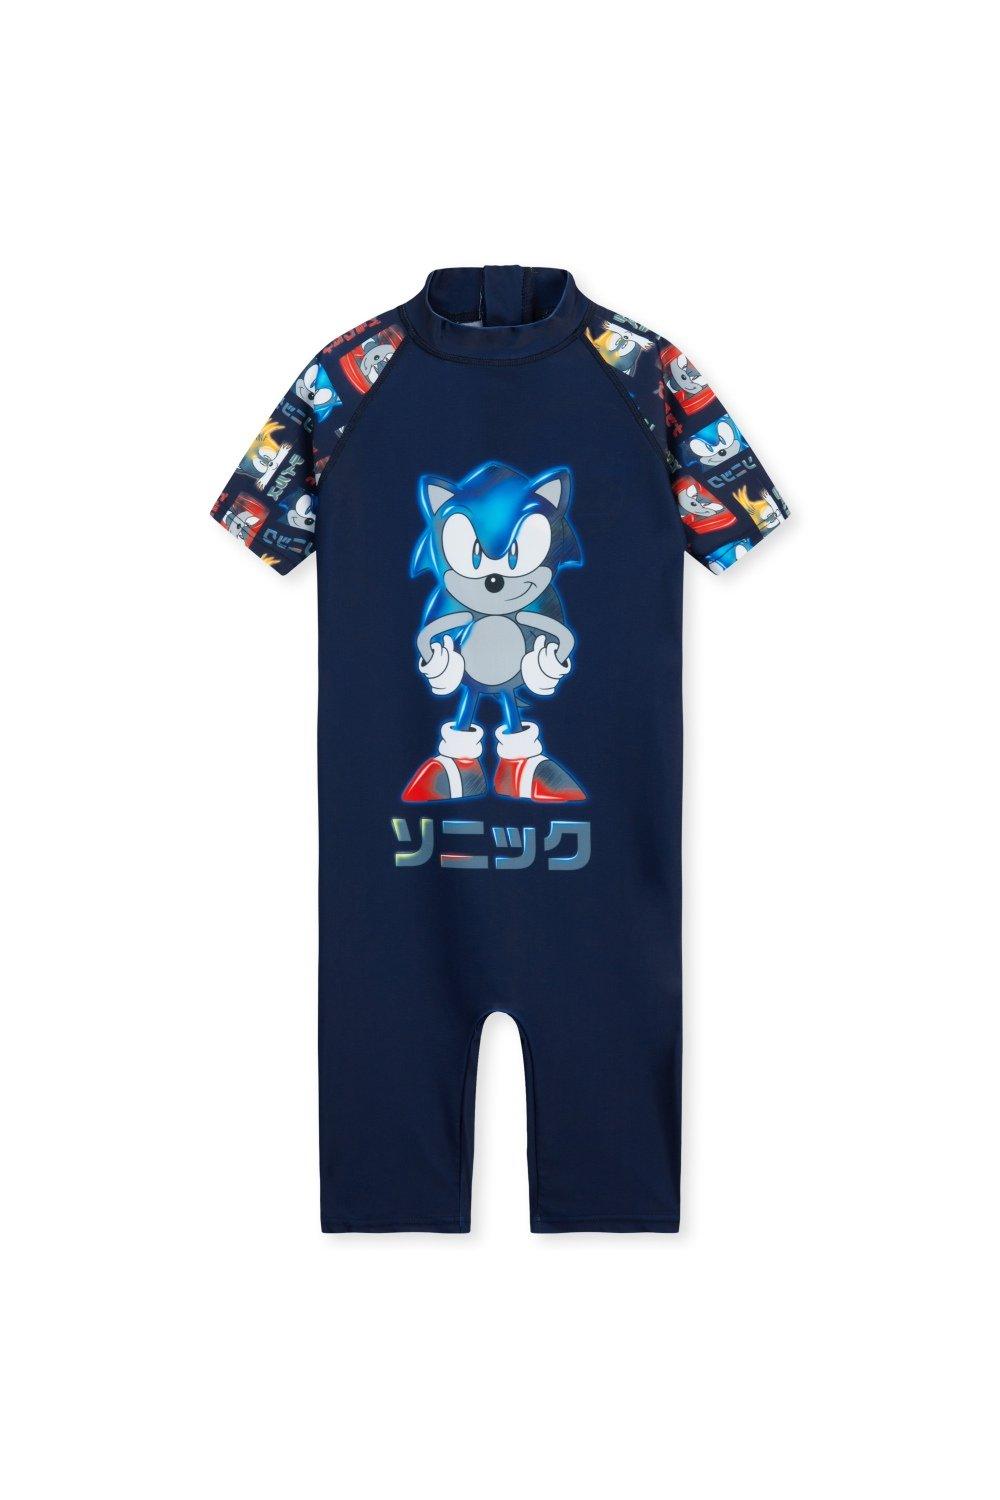 цена Цельный купальный костюм Купальник Sonic the Hedgehog, мультиколор